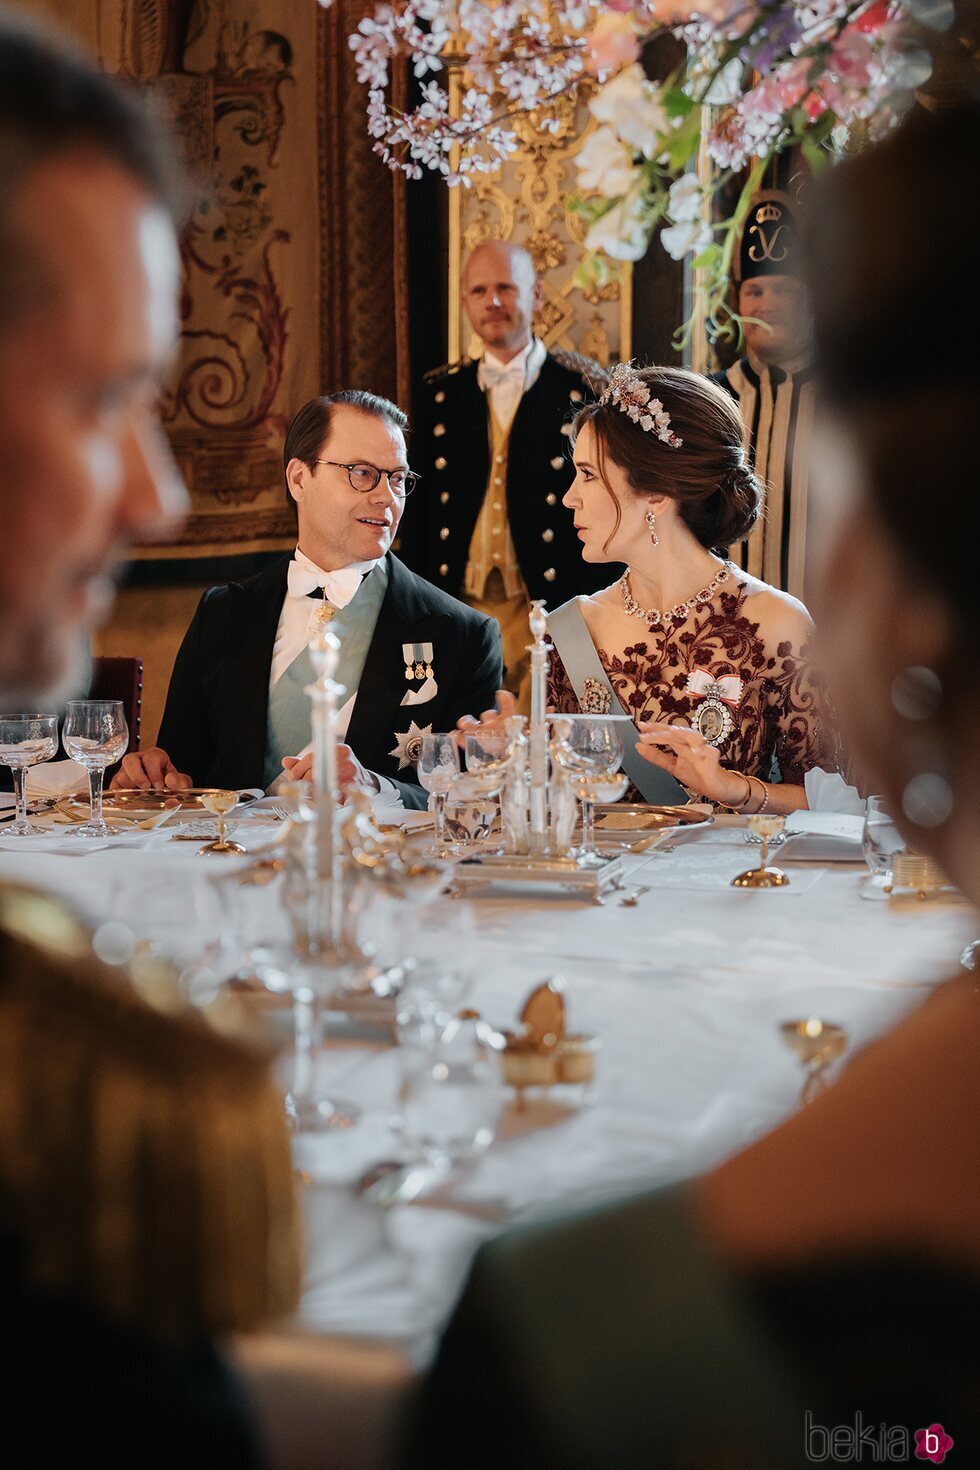 Daniel de Suecia y Mary de Dinamarca en la cena de gala por la Visita de Estado de Federico y Mary de Dinamarca a Suecia